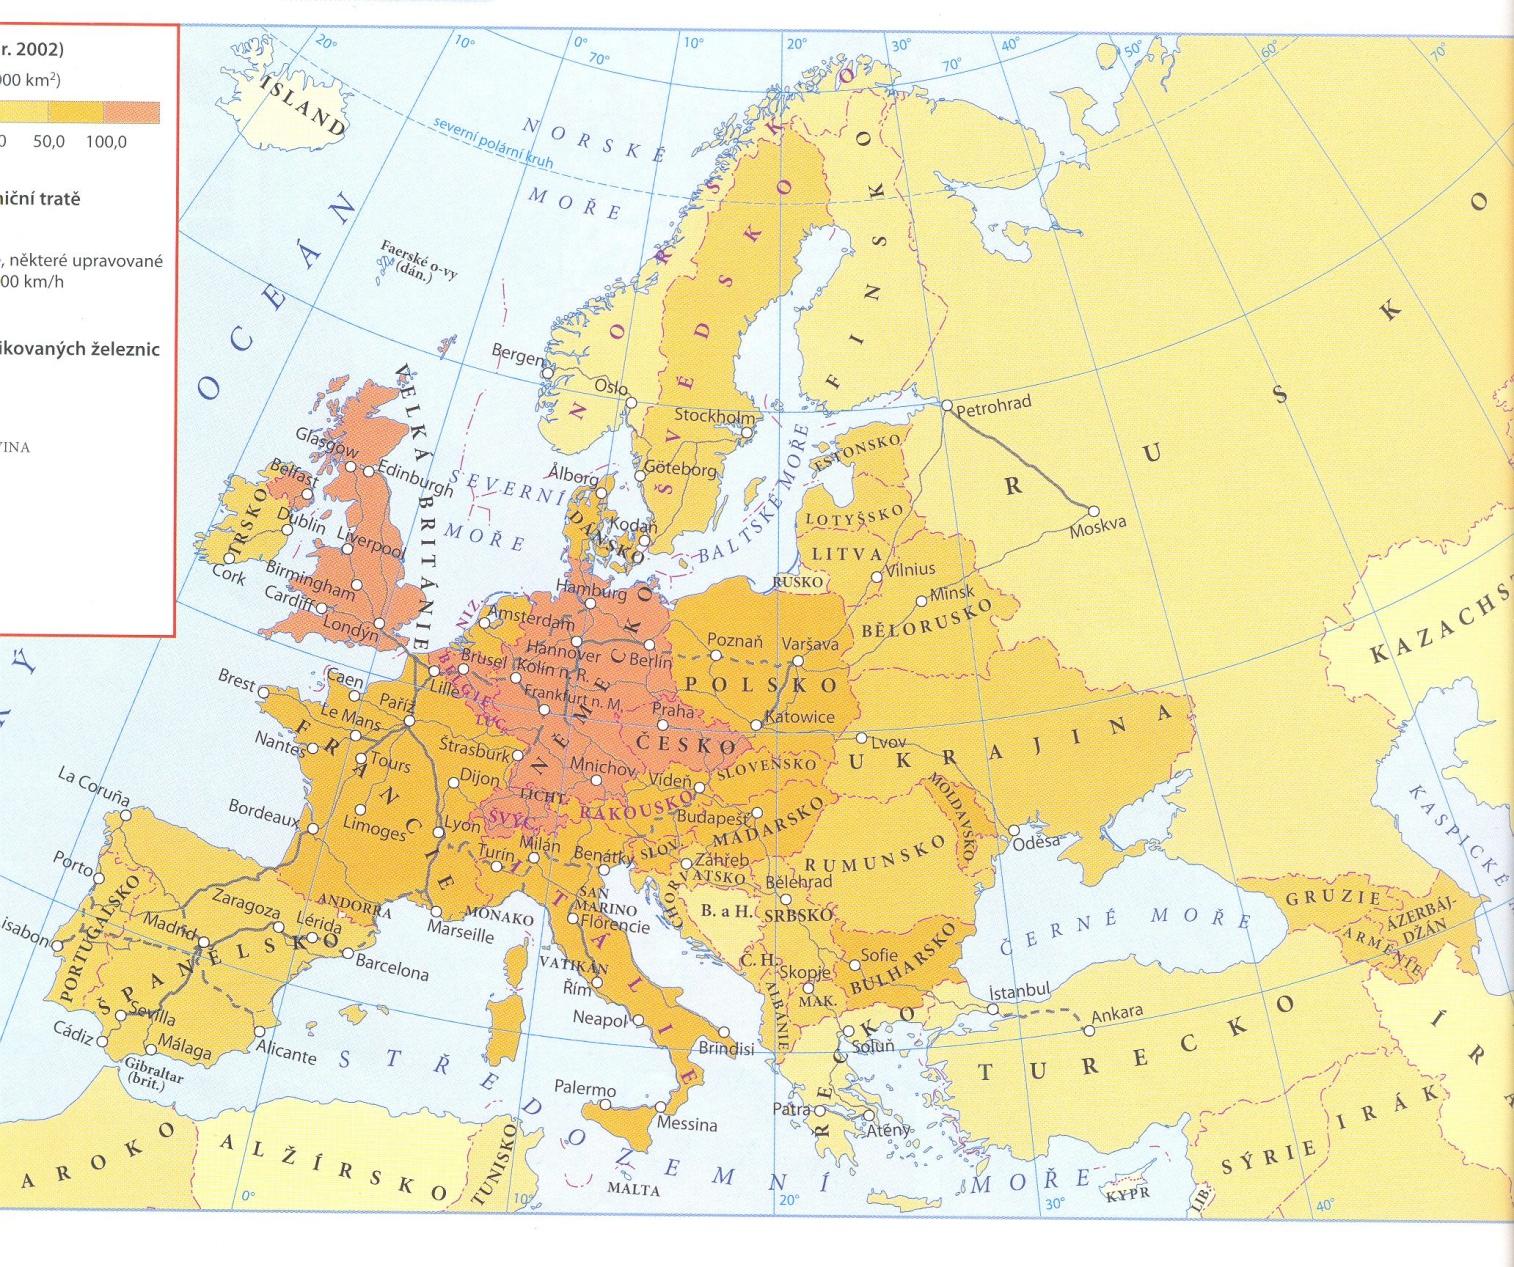 Mapa železniční sítě v Evropě